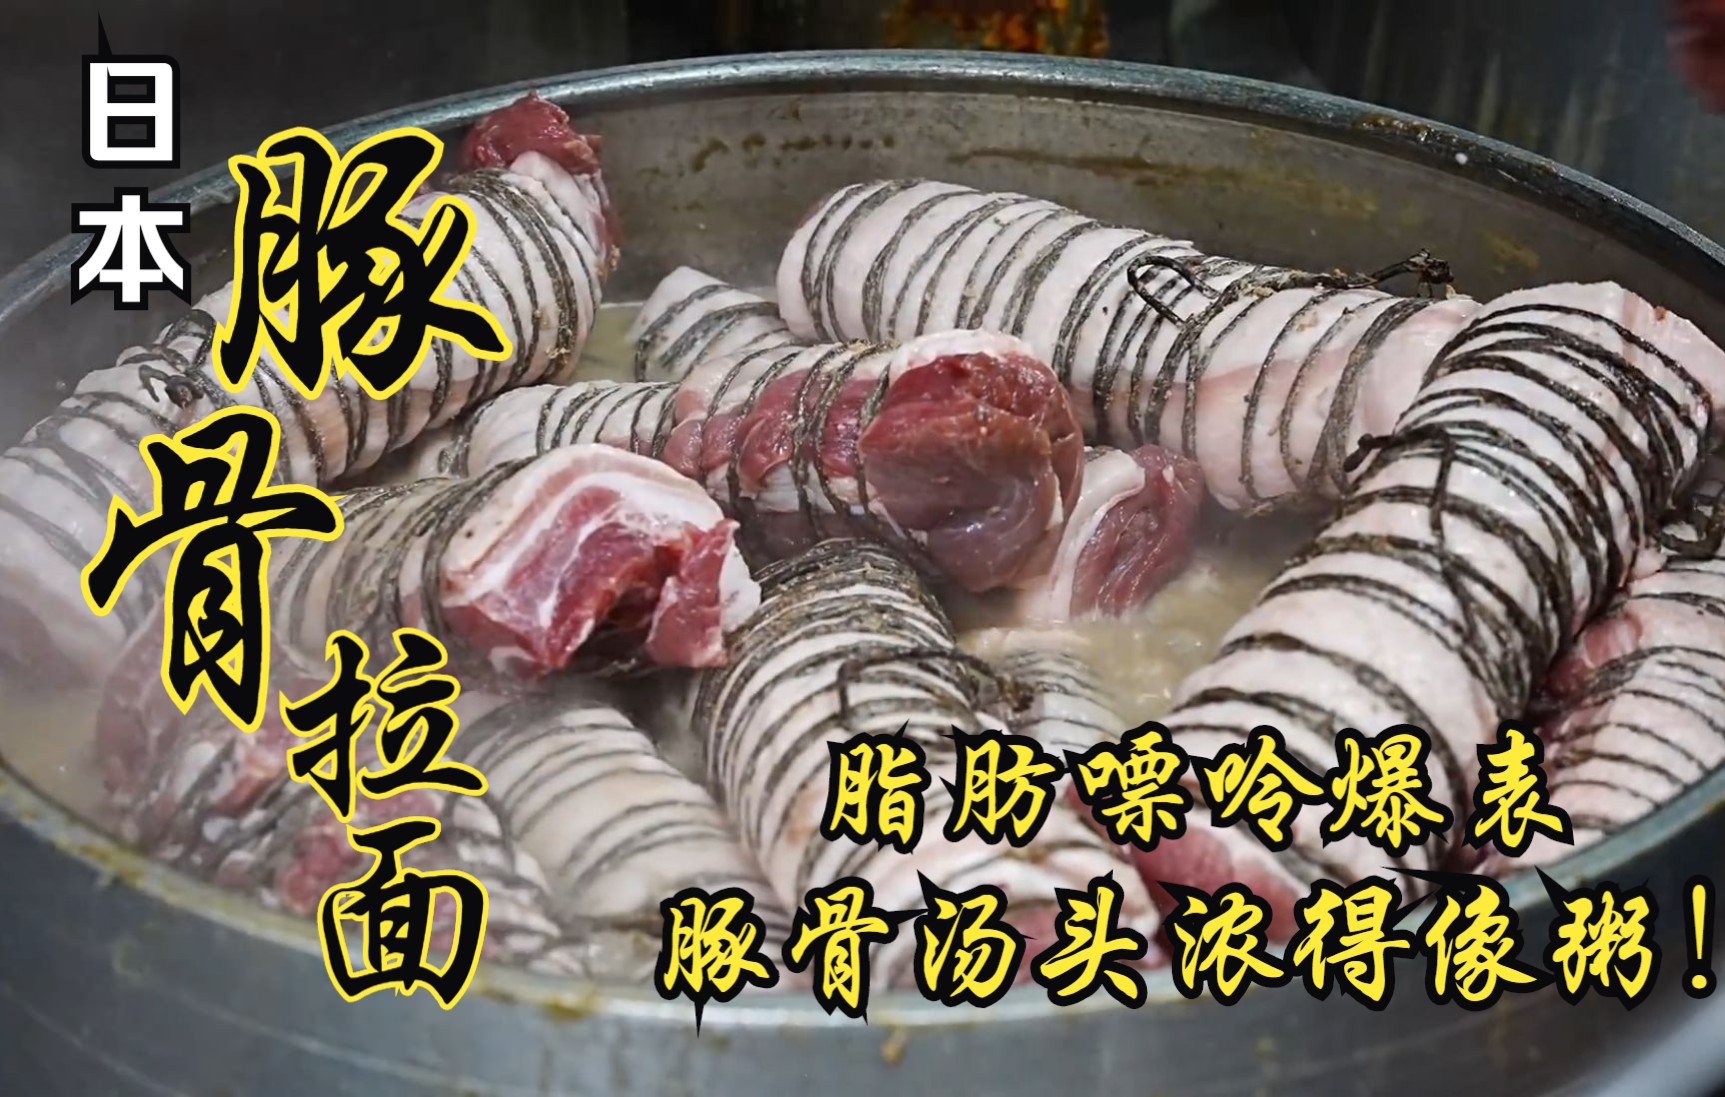 日本超浓稠汤头豚骨拉面！脂肪热量爆表！谁说日本饮食都很健康？